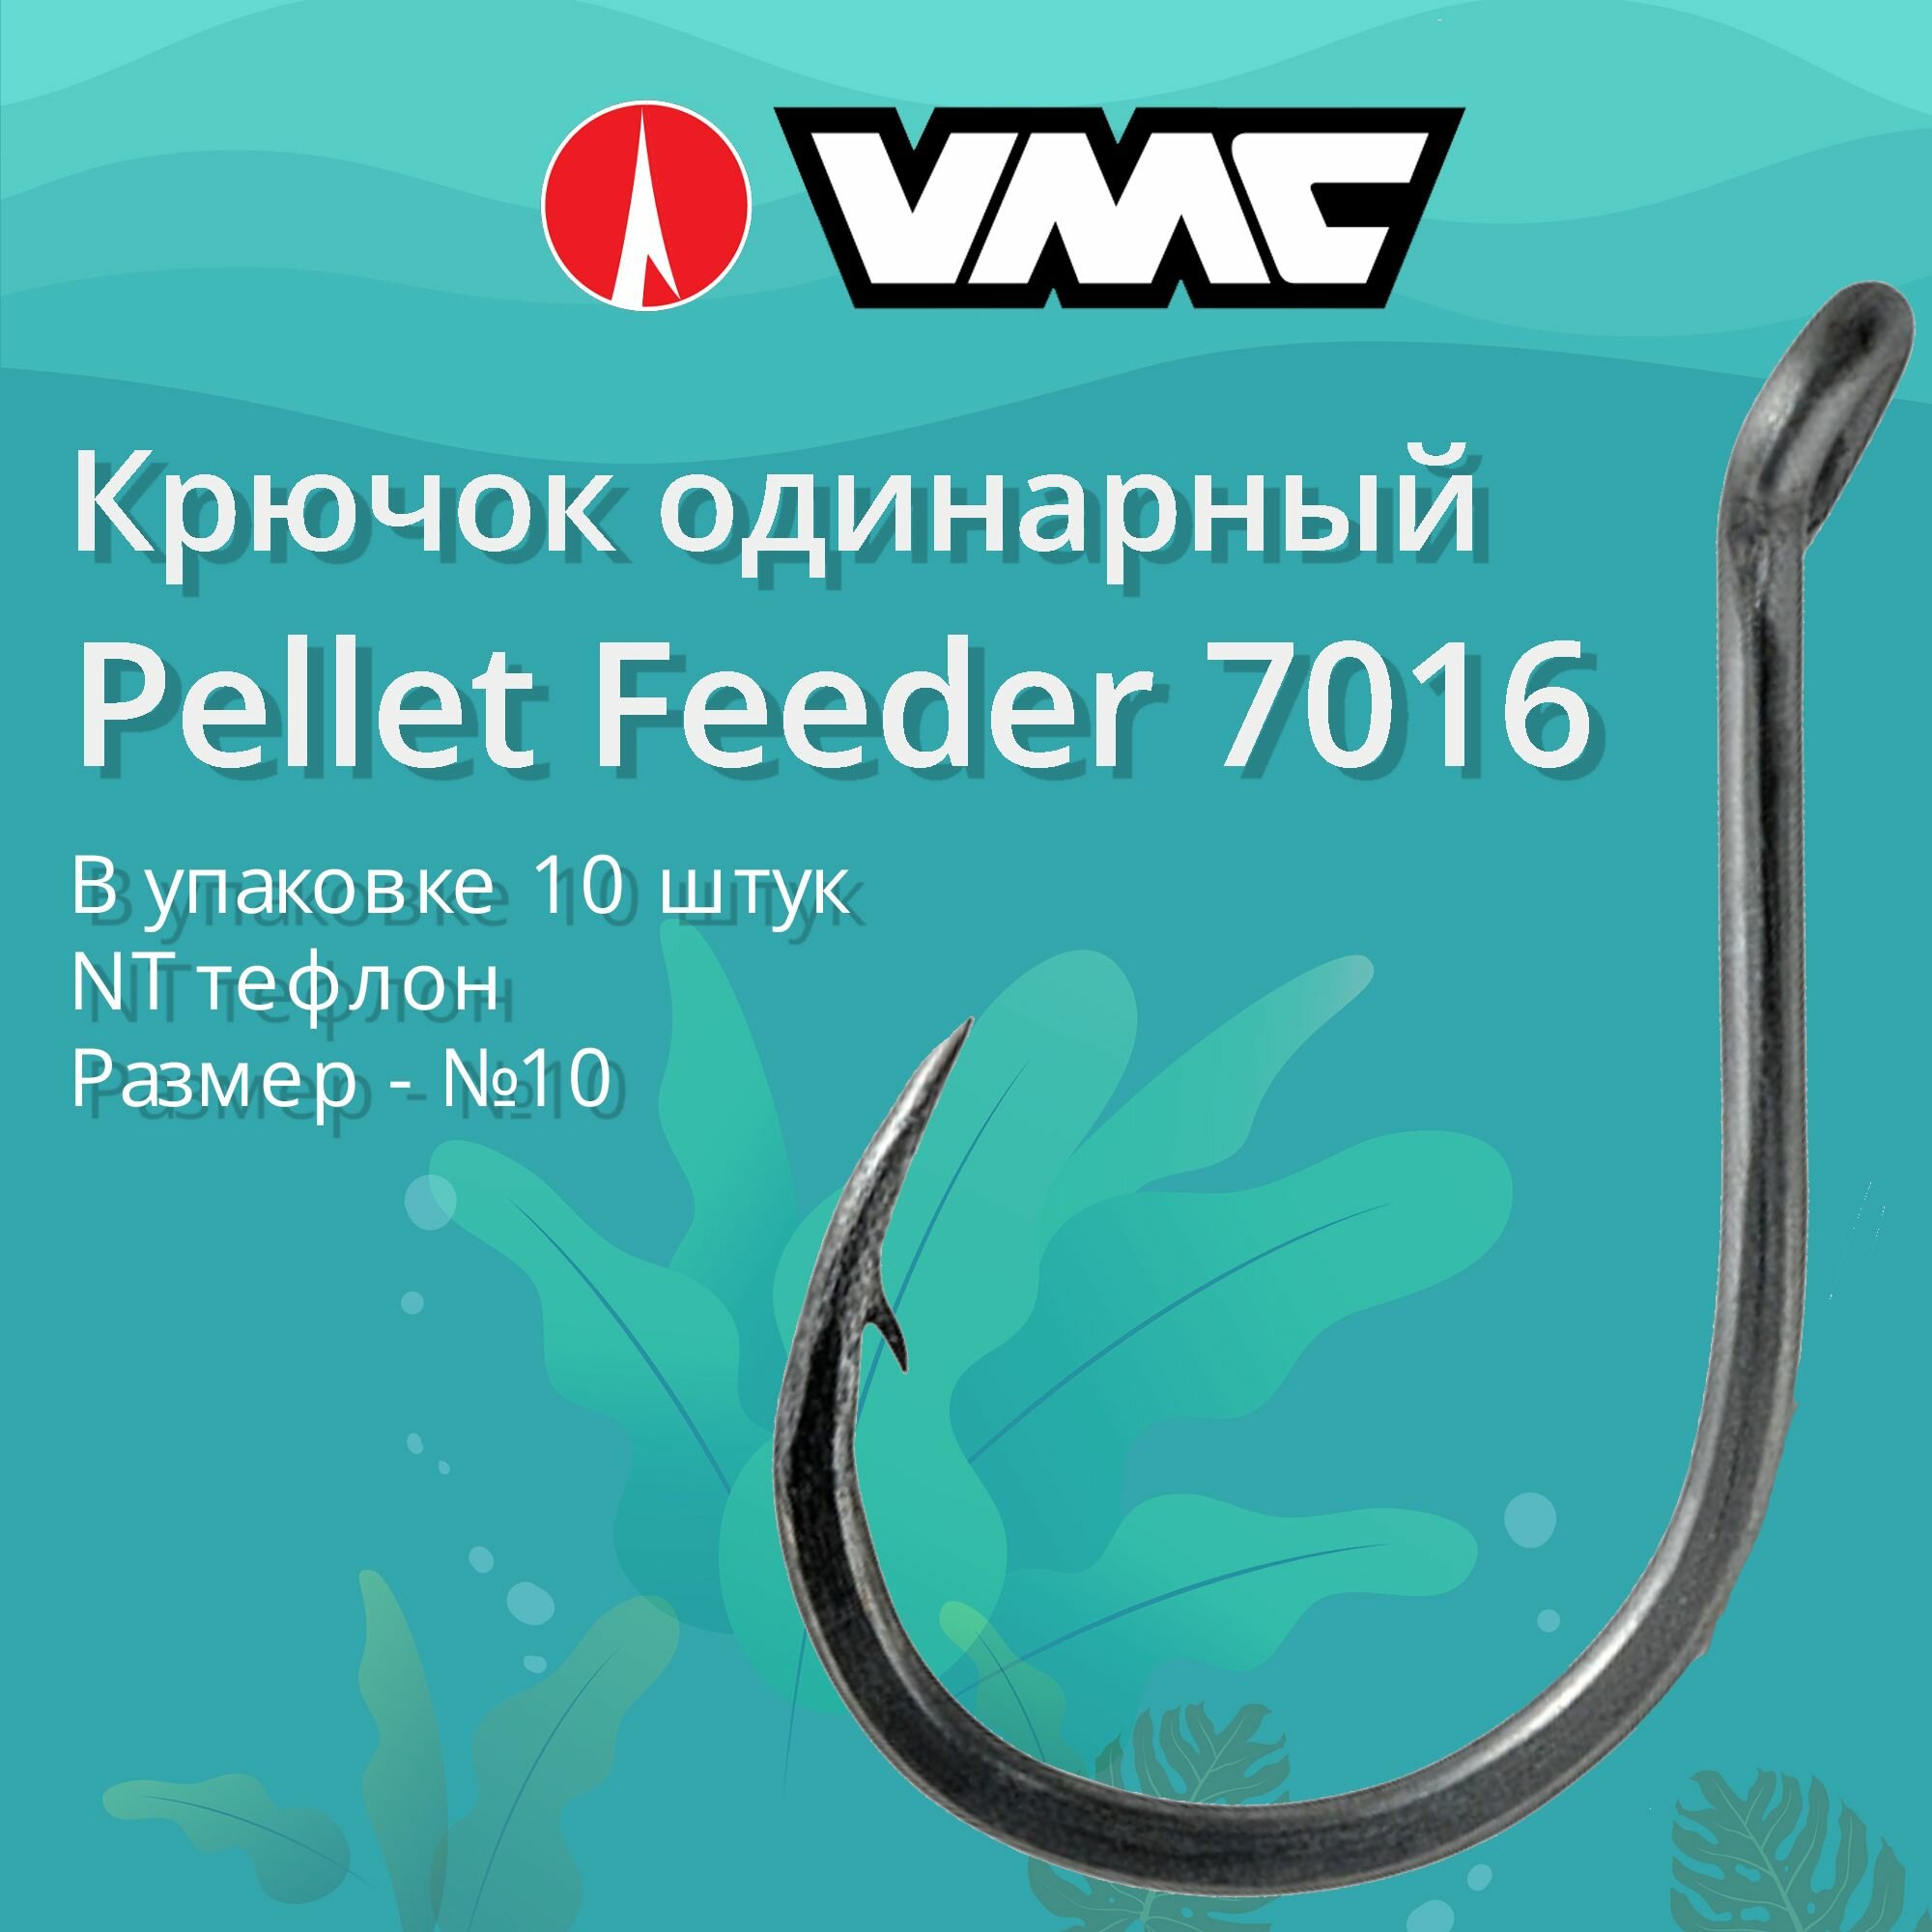 Крючки для рыбалки (одинарный) VMC Pellet Feeder 7016 NT (тефлон) №10 упаковка 10 штук